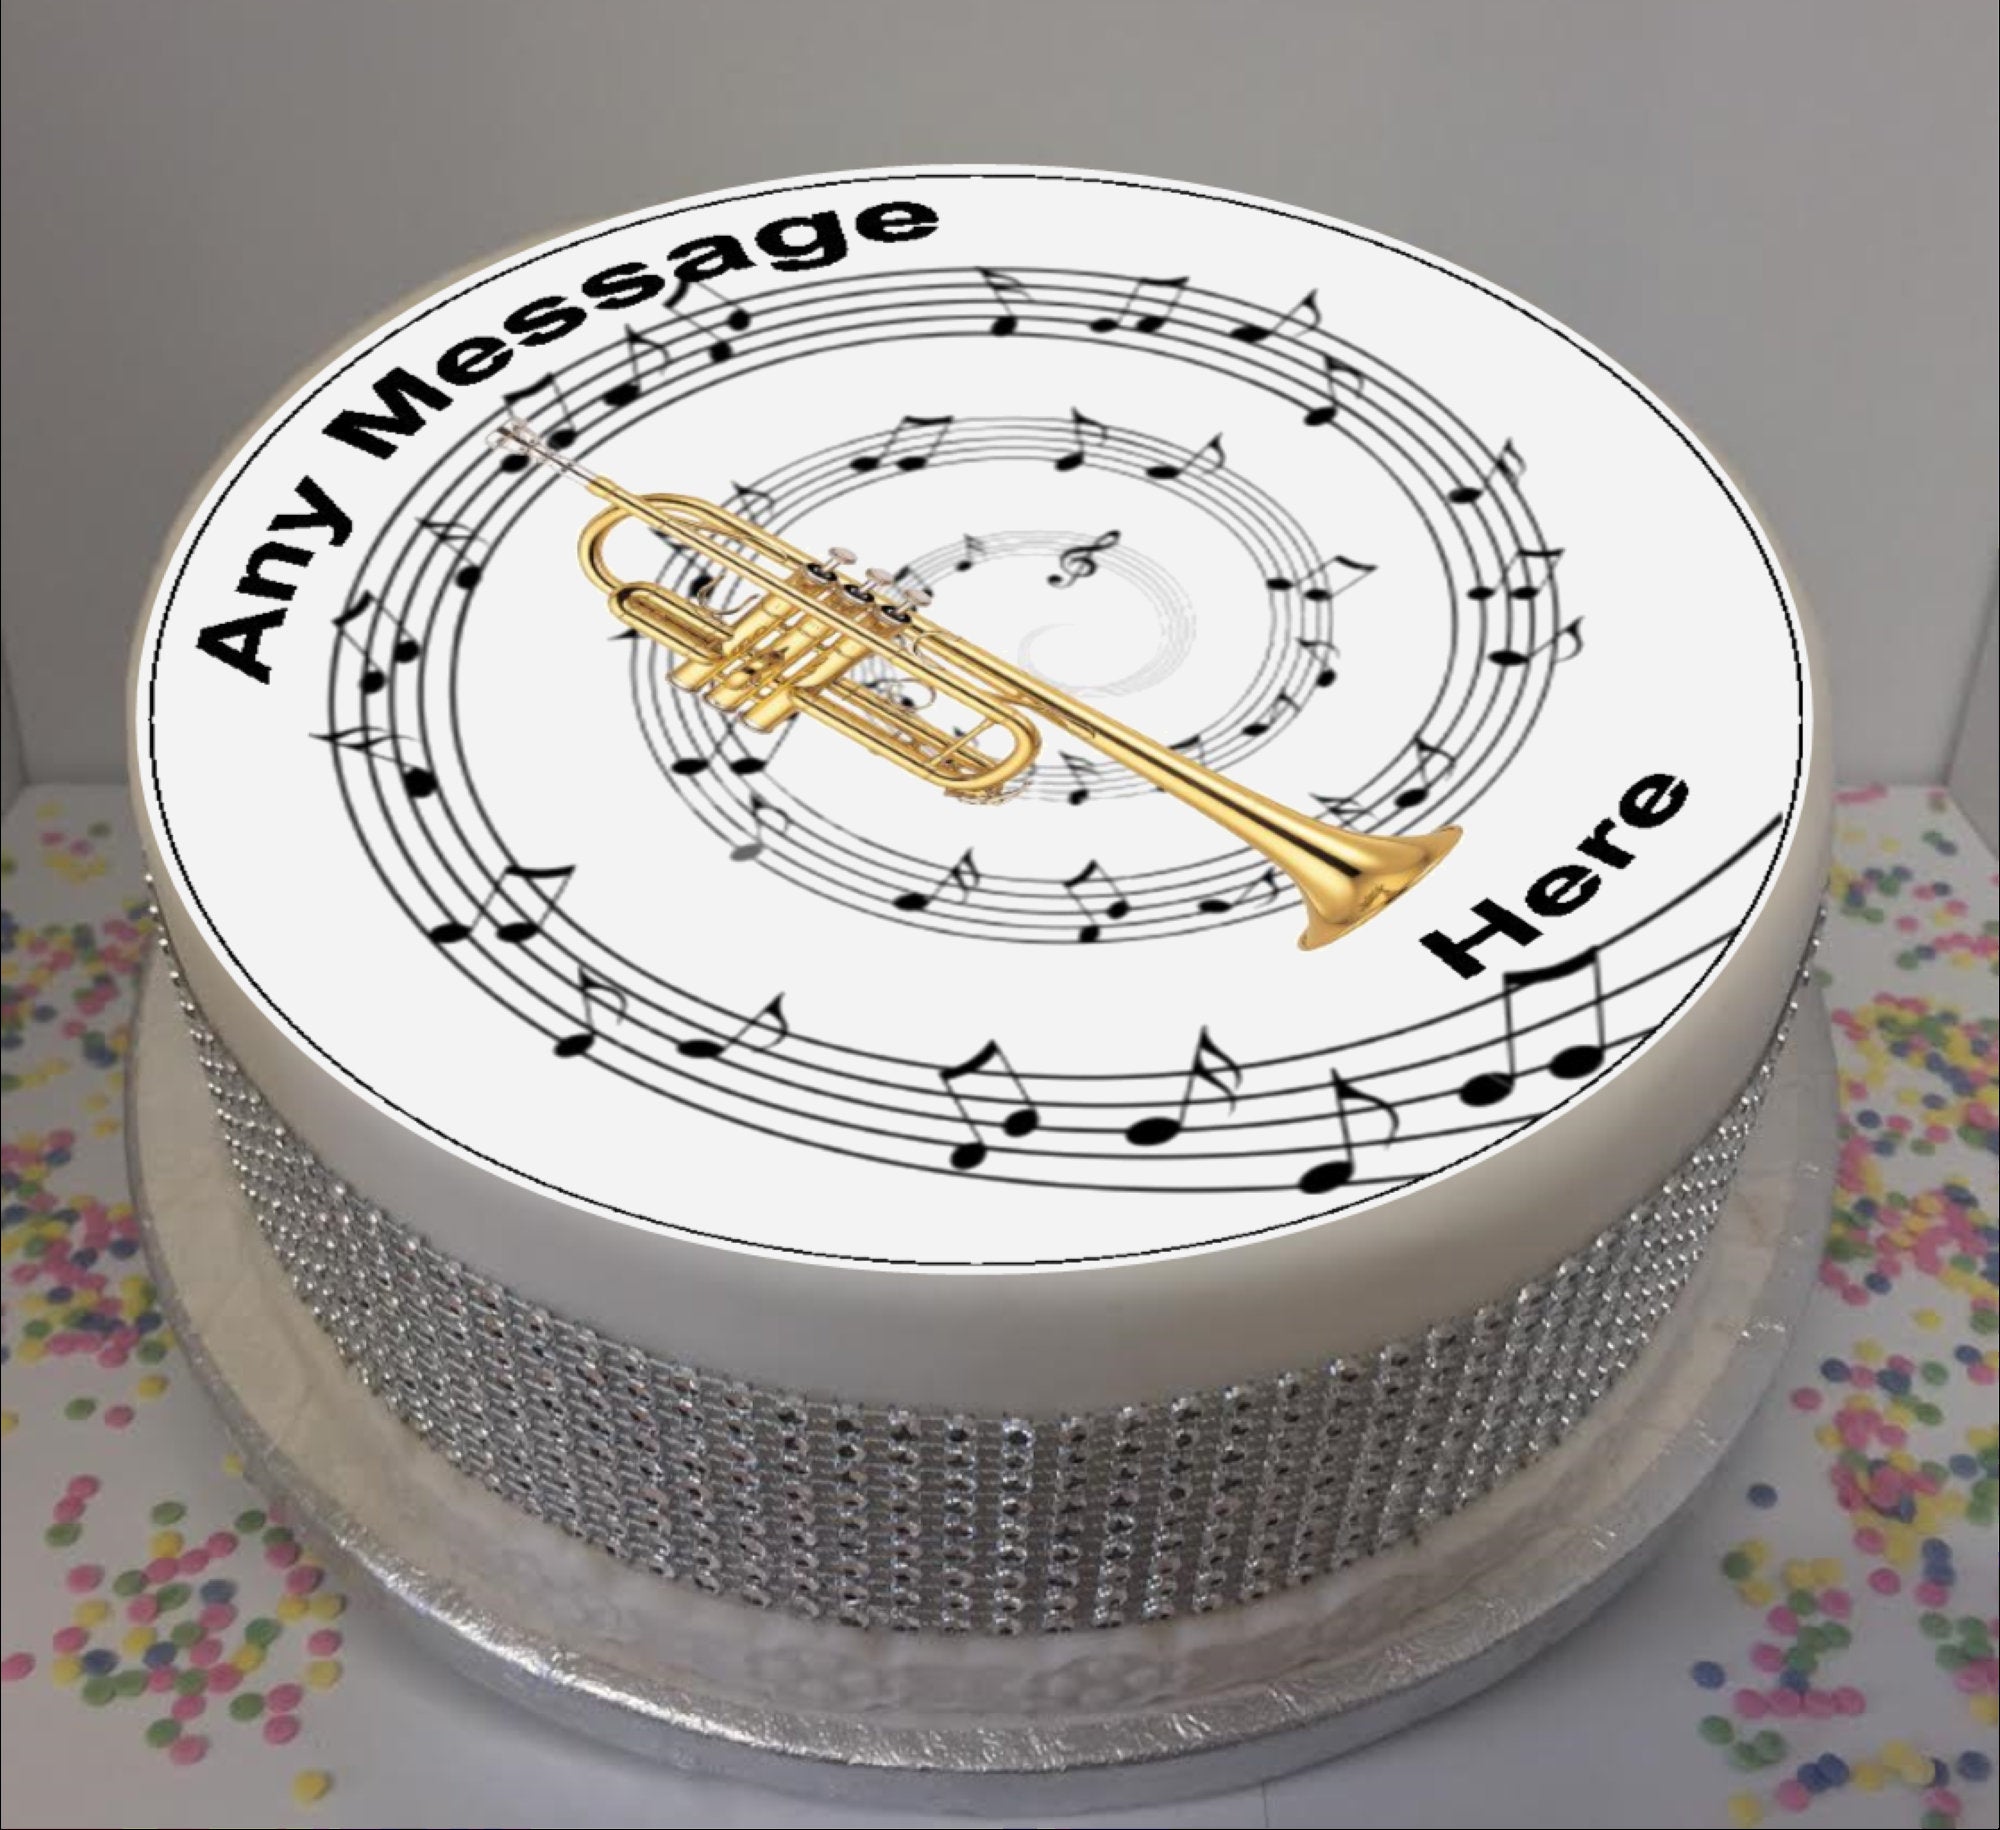 Singer cake | Music cakes, Music themed cakes, Sheet cake designs